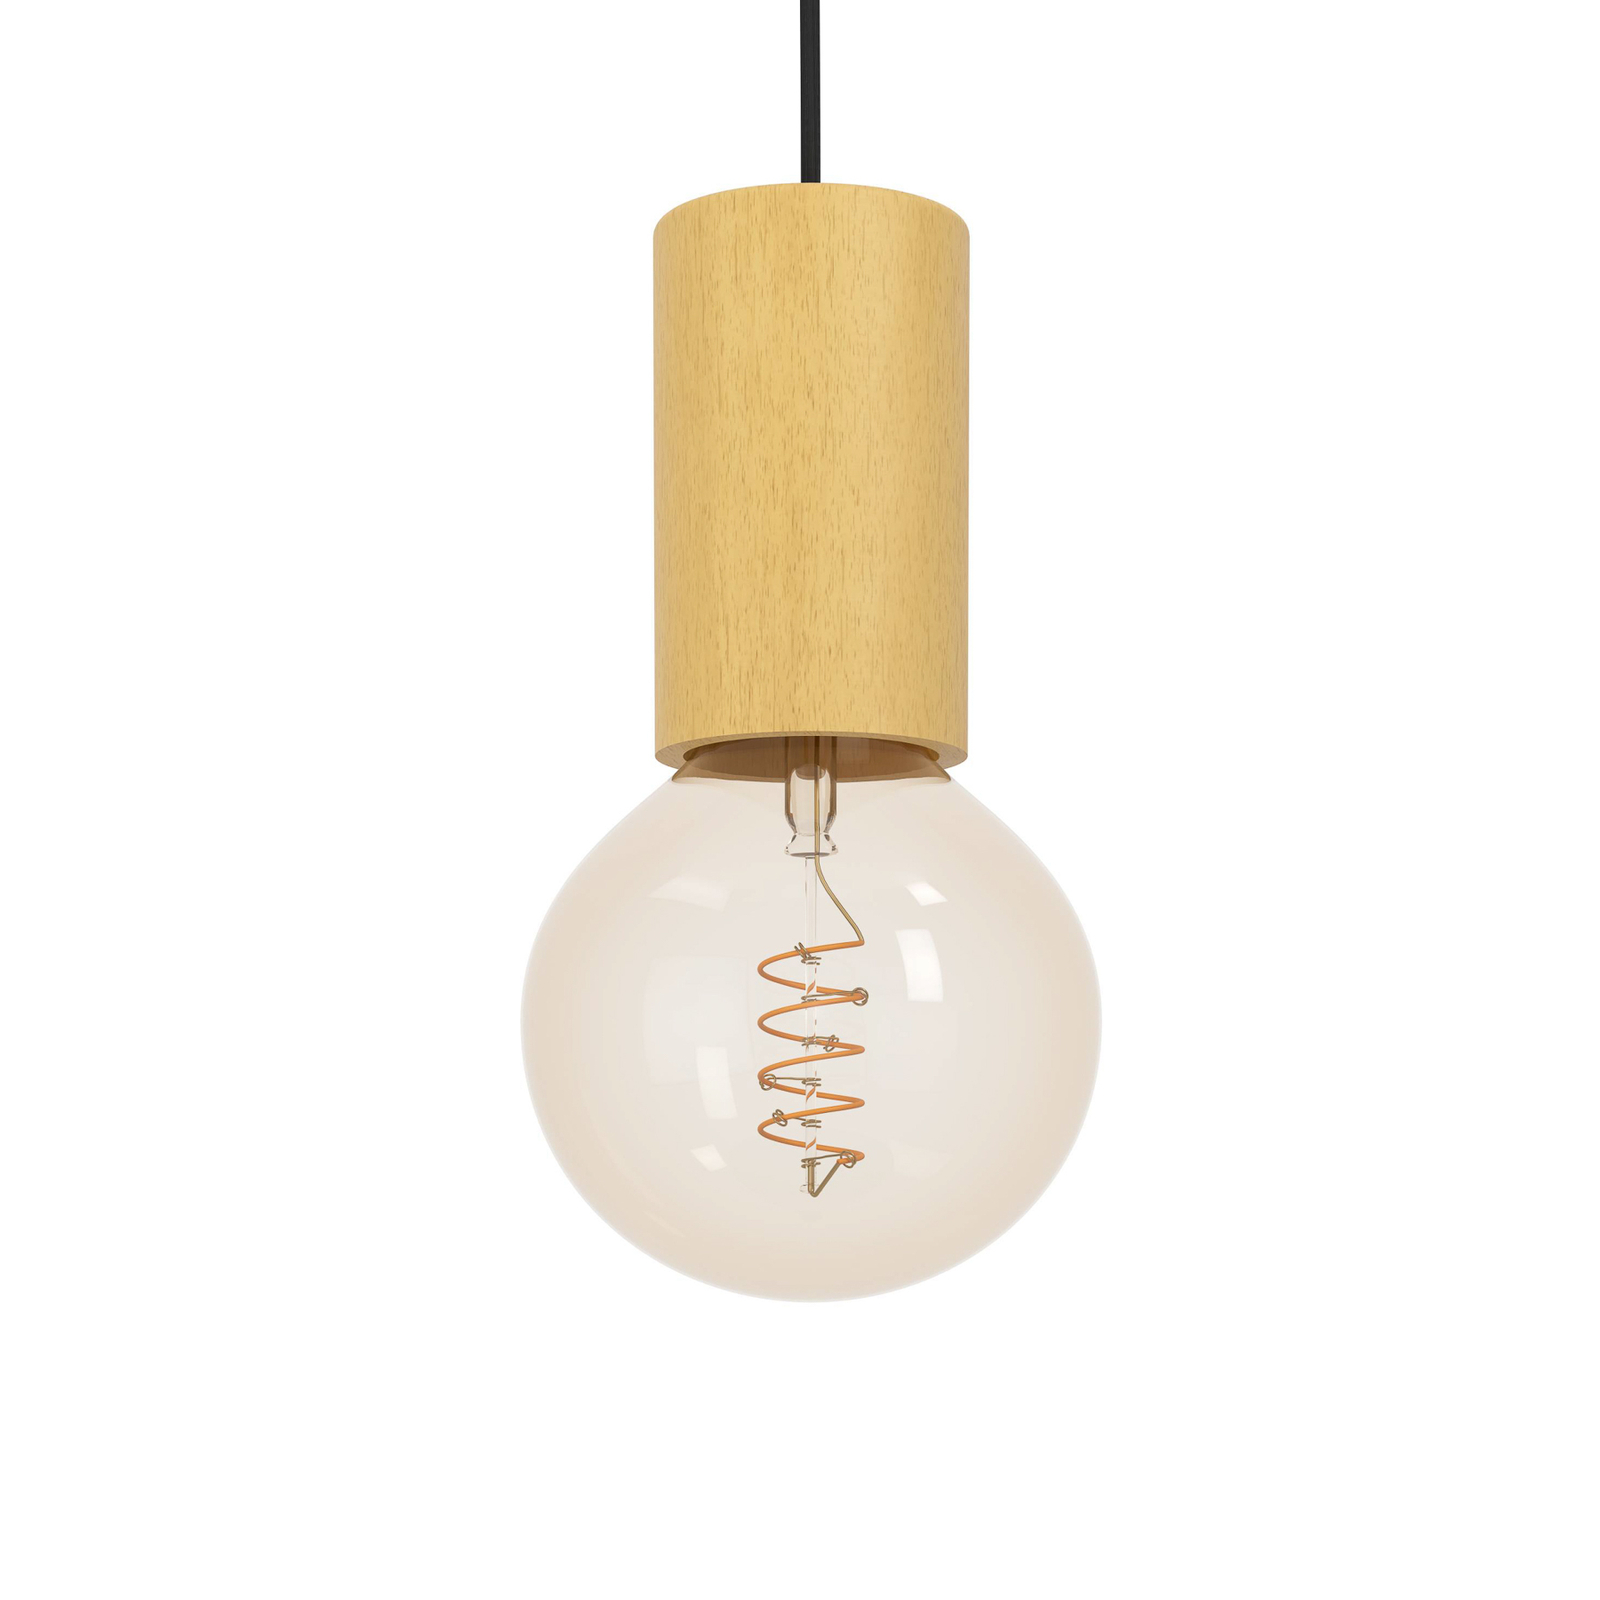 Pozueta 1 pendant light, 1-bulb, black/brown